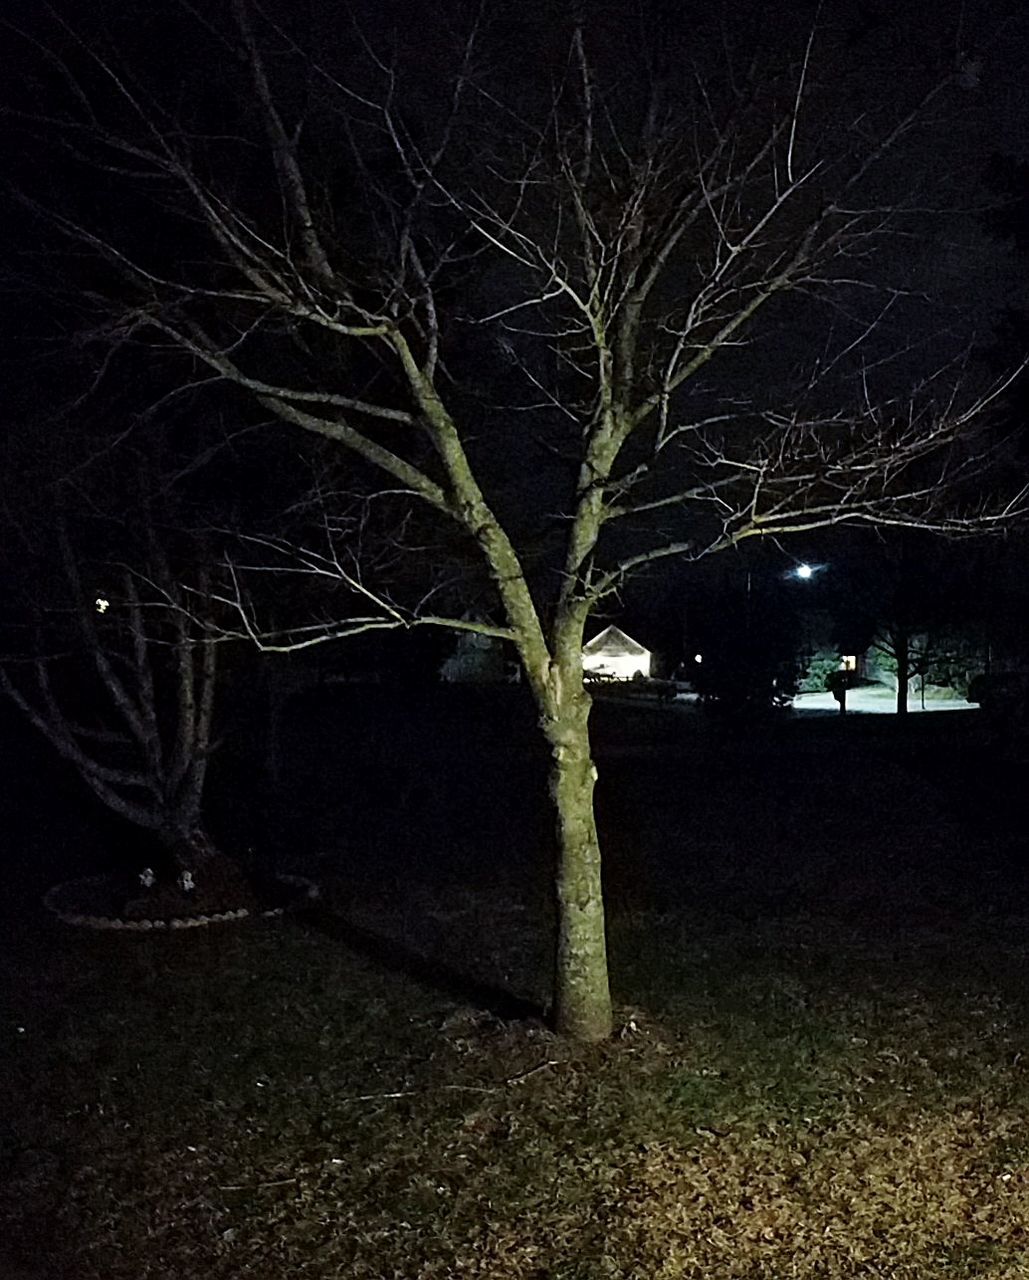 CLOSE-UP OF TREE AT NIGHT